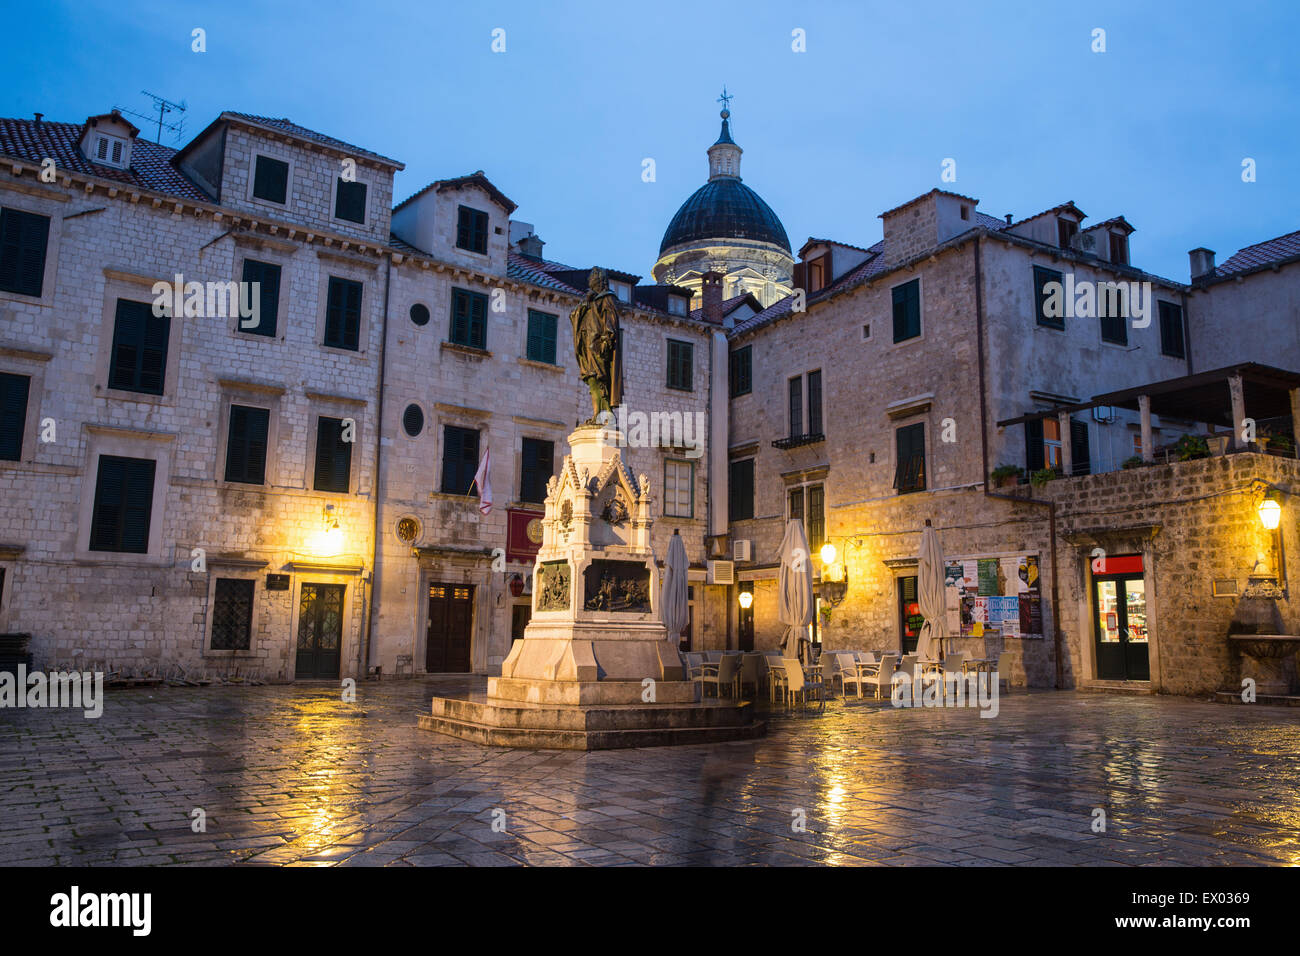 Vue sur la place de la vieille ville au crépuscule, Dubrovnik, Croatie Banque D'Images